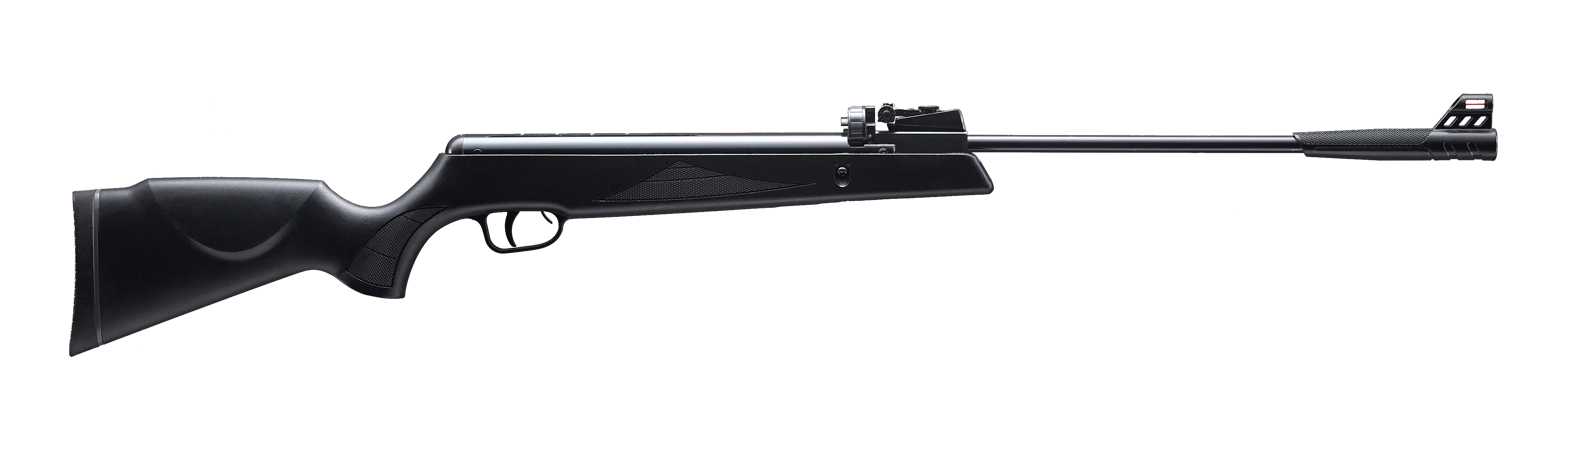 Snowpeak GR1000X 5.5MM Air Rifle